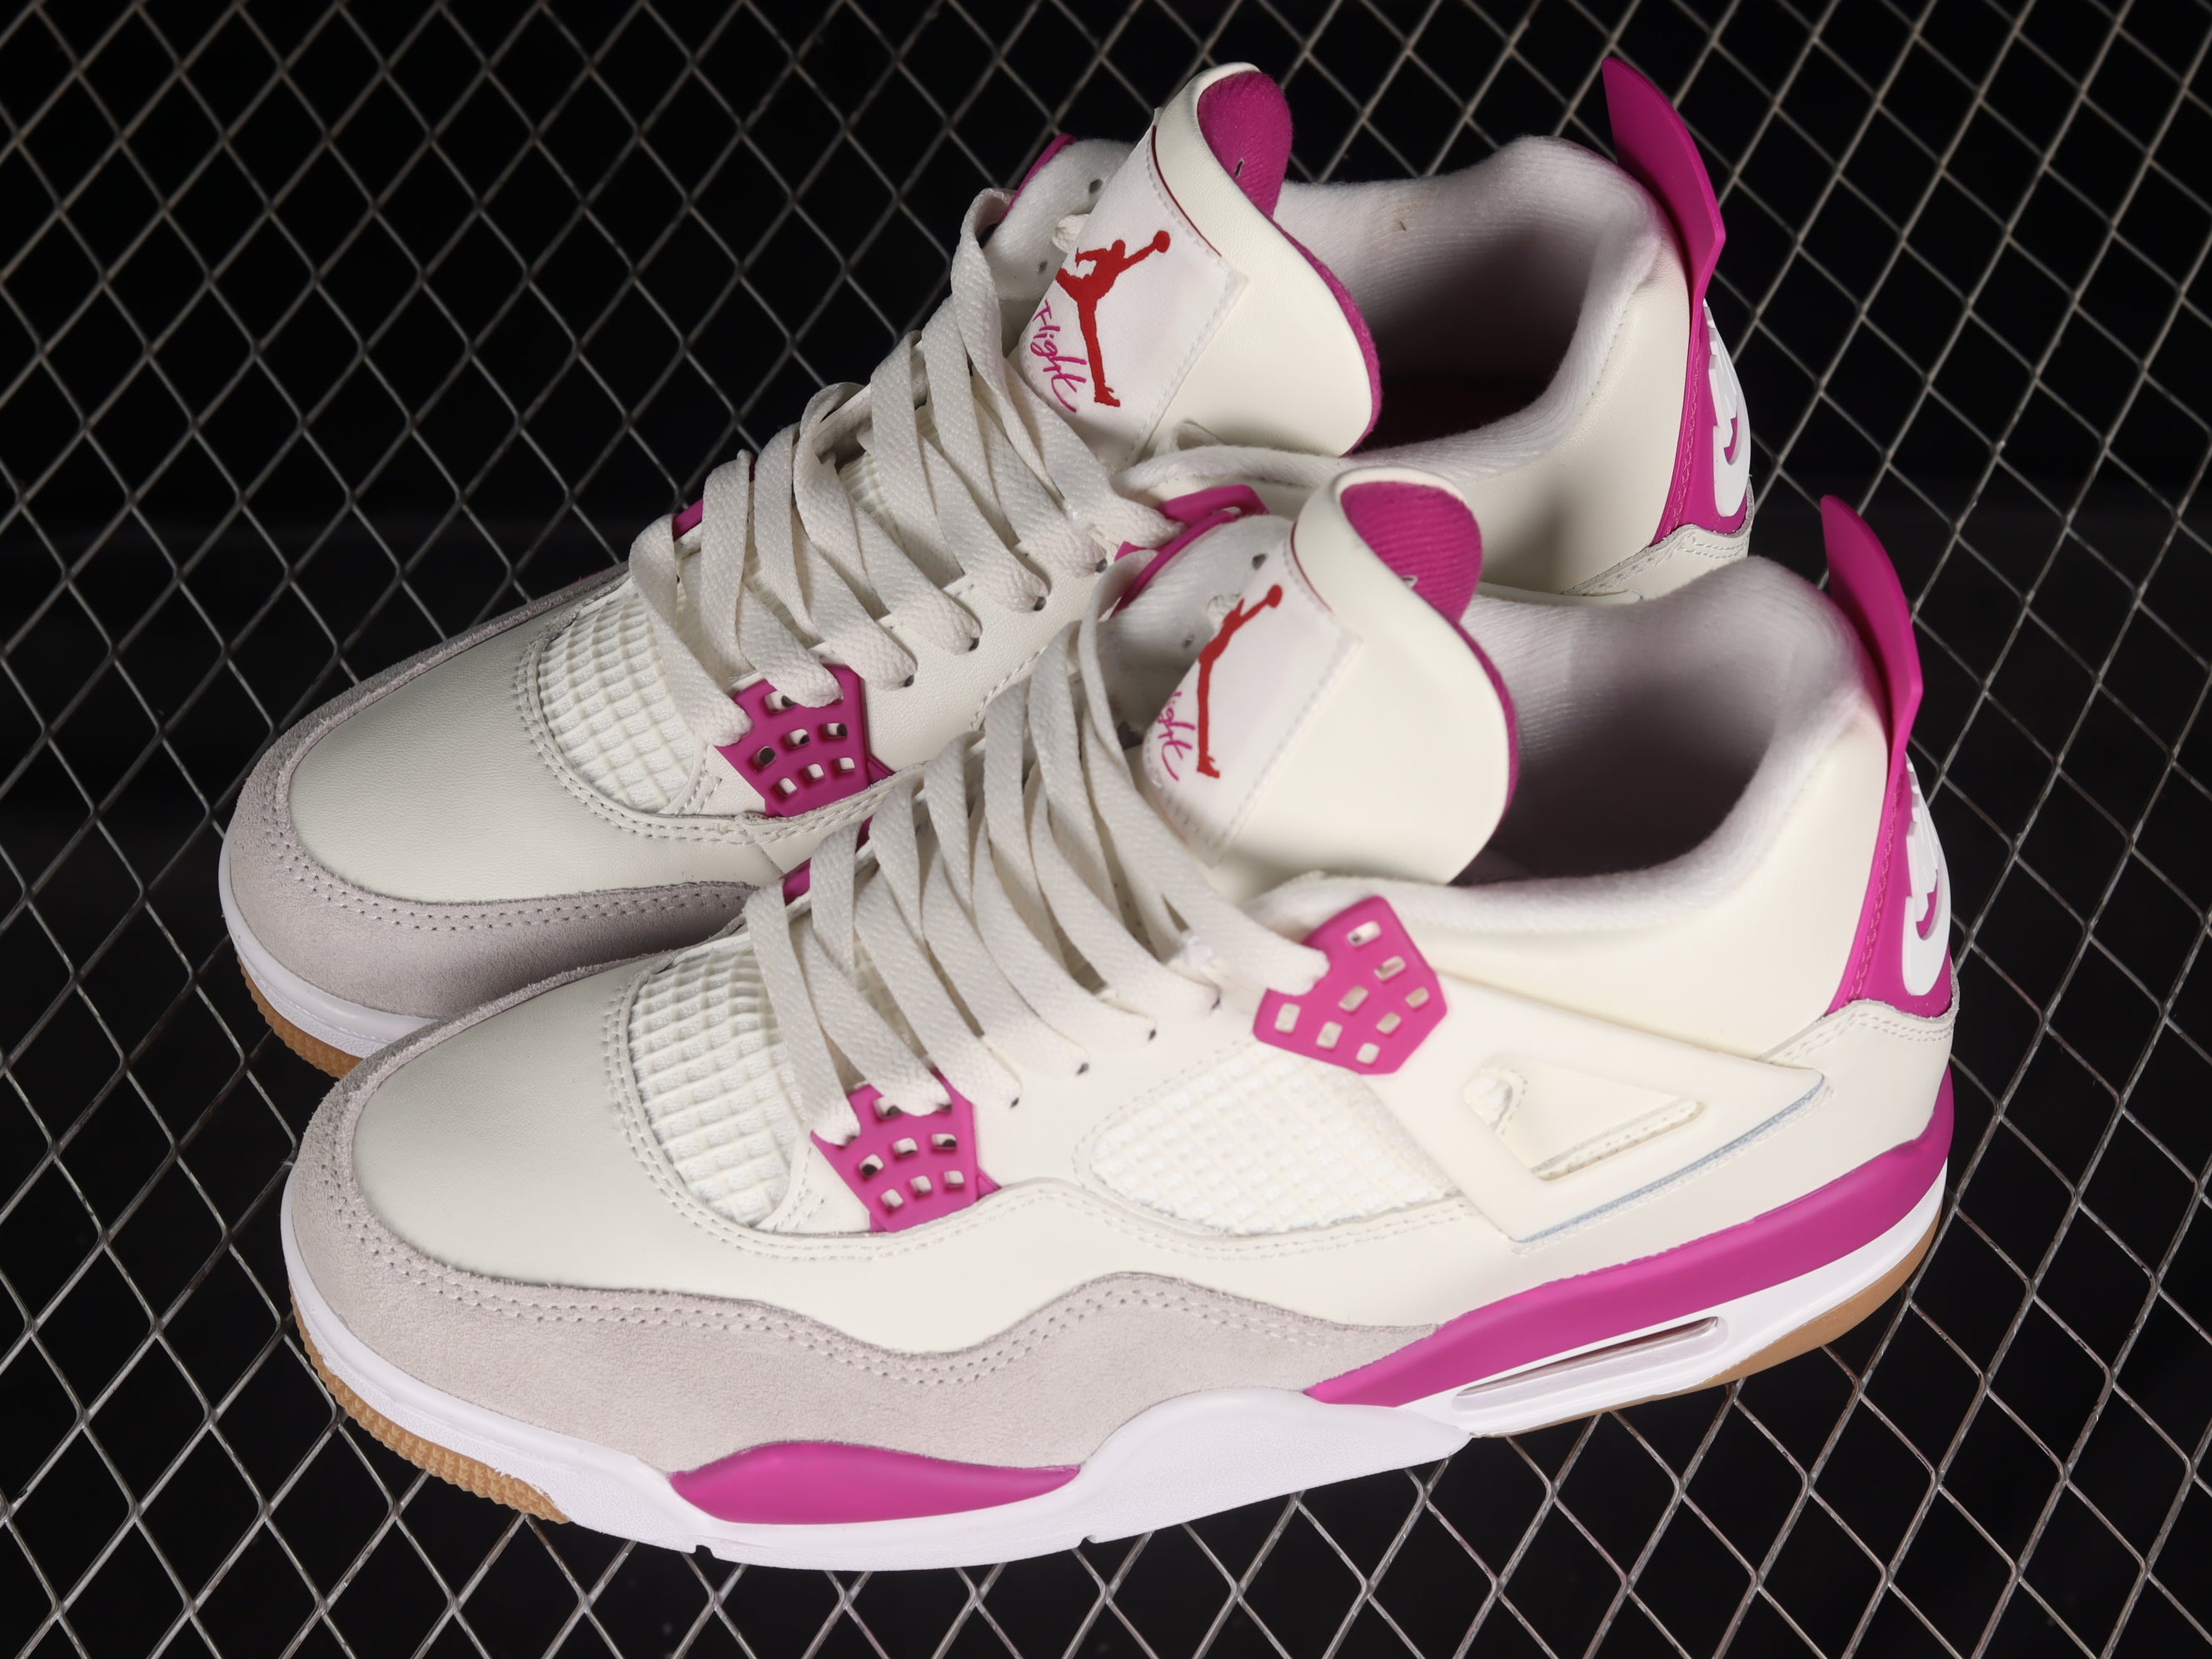 Air Jordan 4 "Pink"